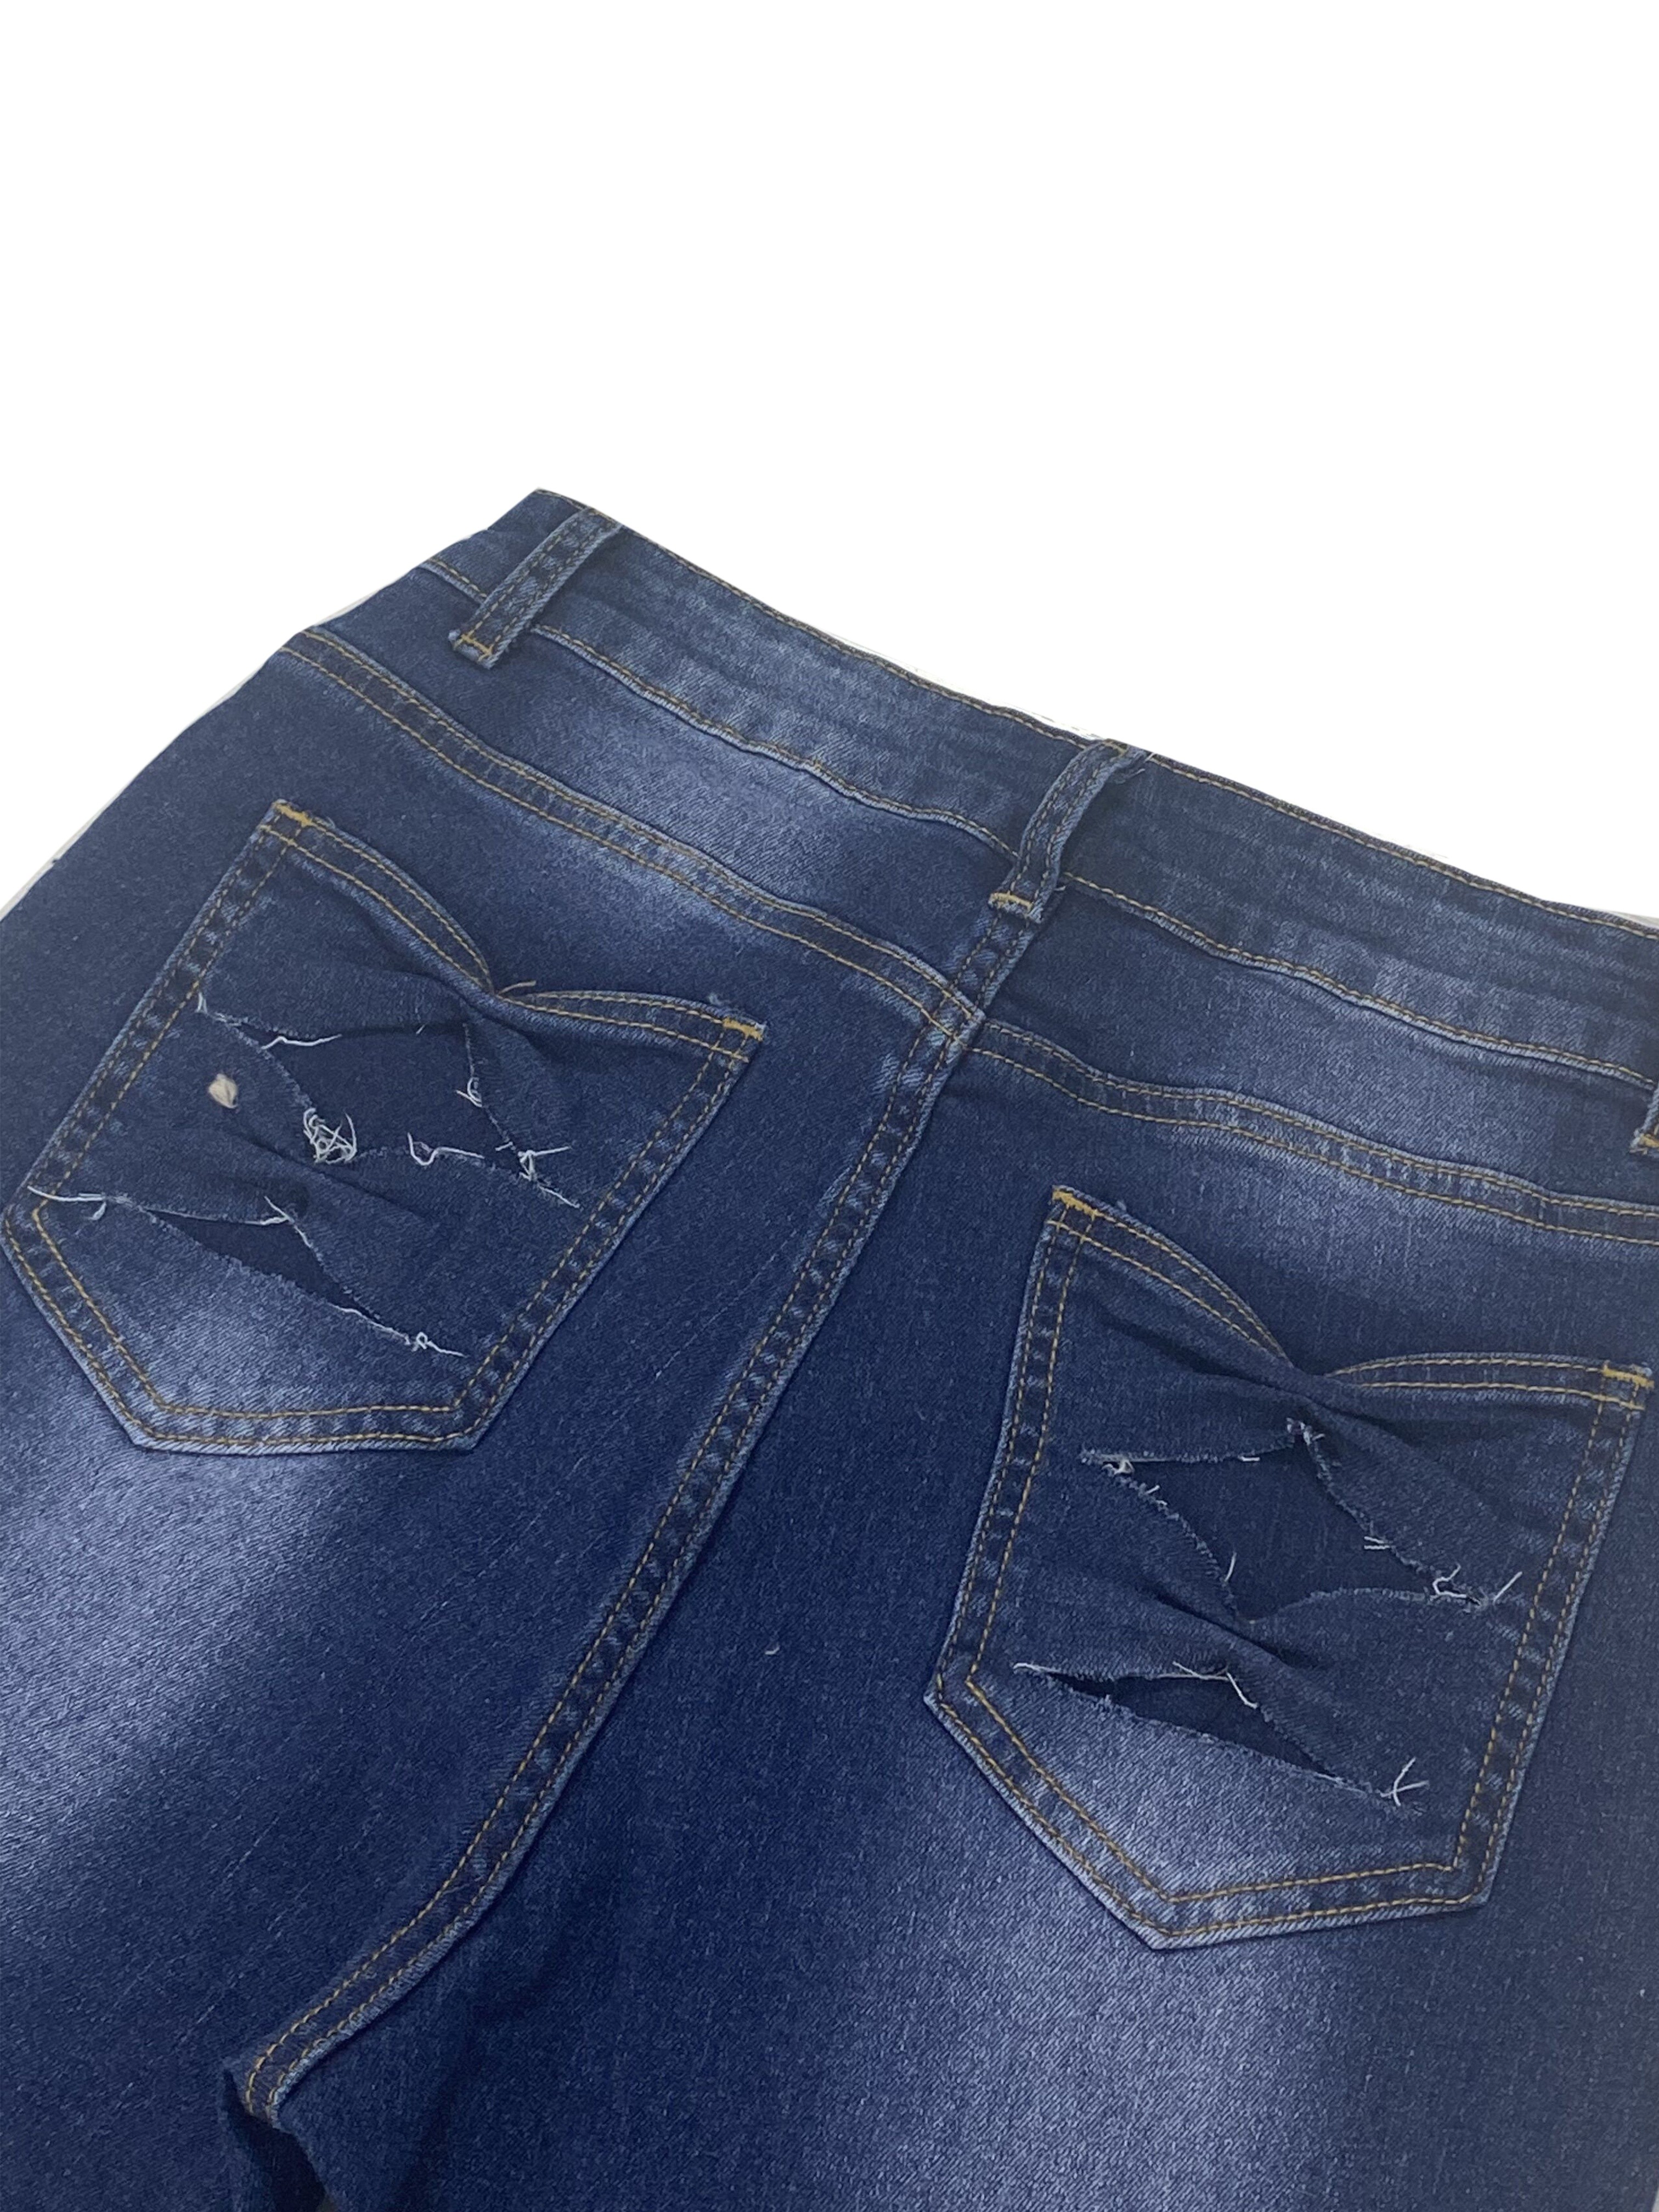 Jeans Ajustados Elásticos Mujer Pantalones Mezclilla Botones - Temu Mexico